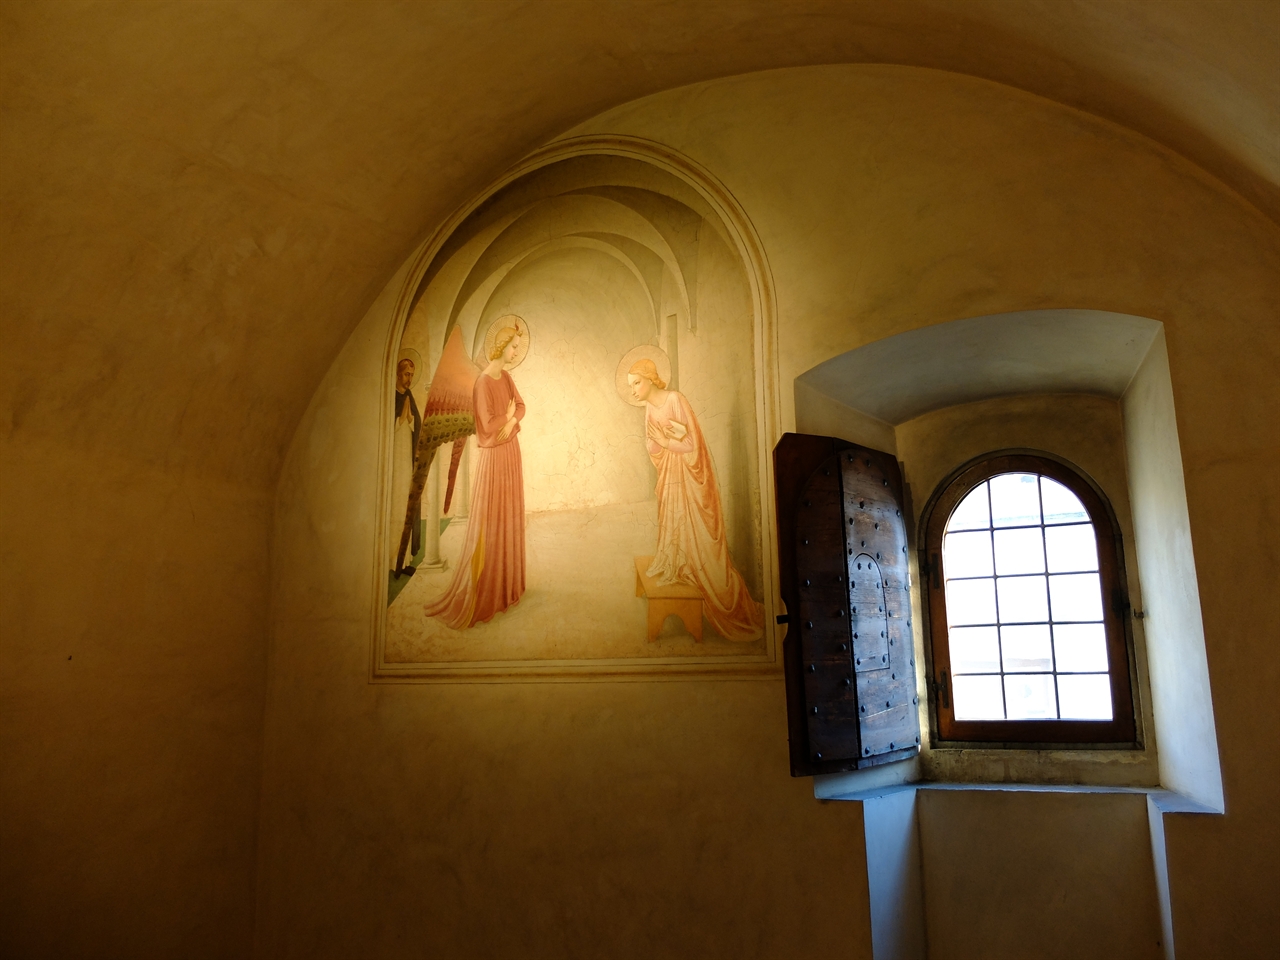 프라 안젤리코 '수태 고지', 피렌체 산 마르코 수도원. 43개의 첼라를 장식하고 있는 프라 안젤리코의 작은 프레스코화들 중 하나로 간결한 양식의 '수태 고지'입니다.